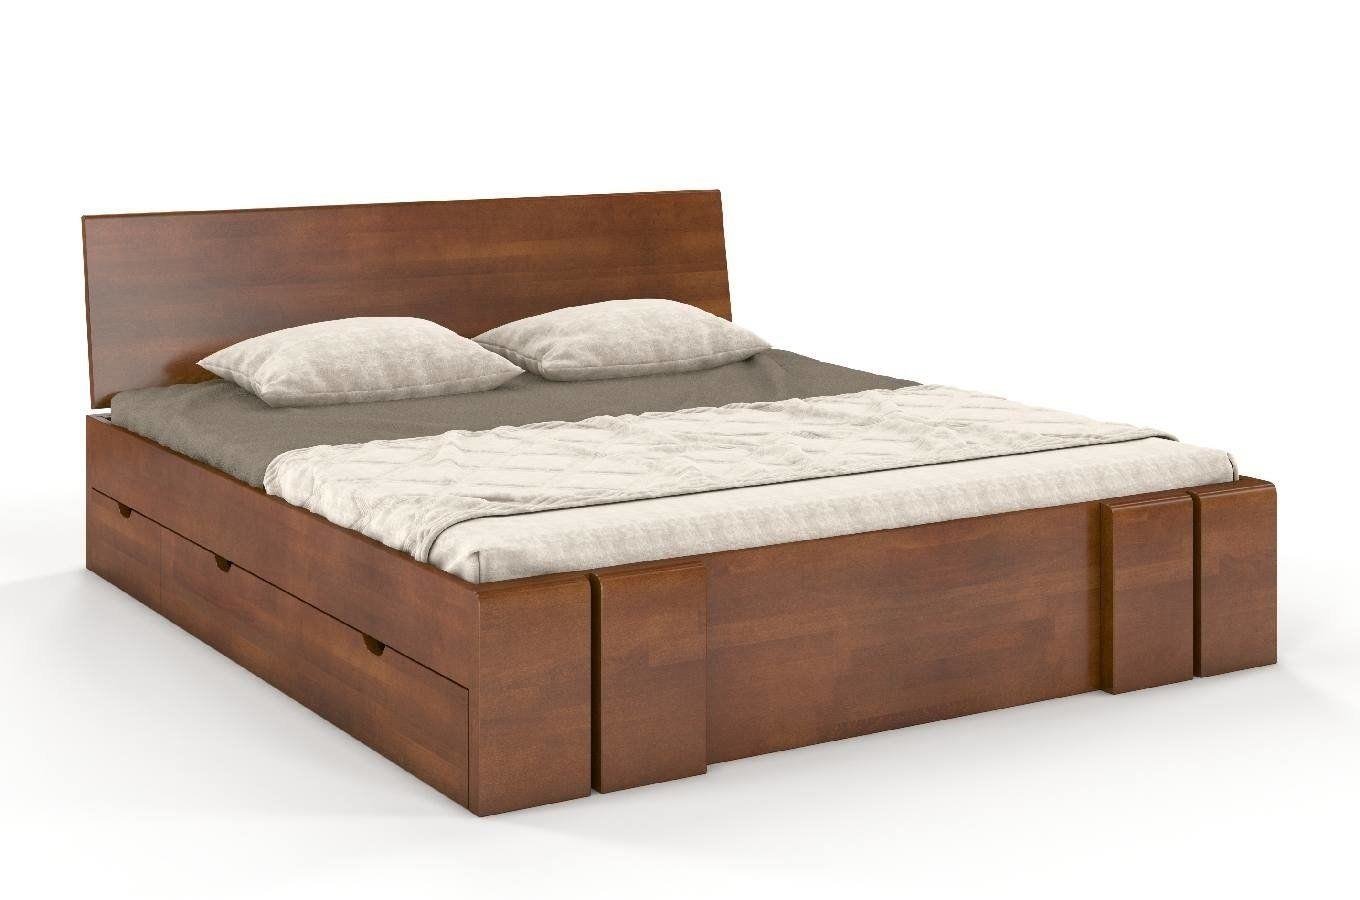 Łóżko drewniane bukowe z szufladami Skandica VESTRE Maxi & DR / 160x20 cm, kolor orzech